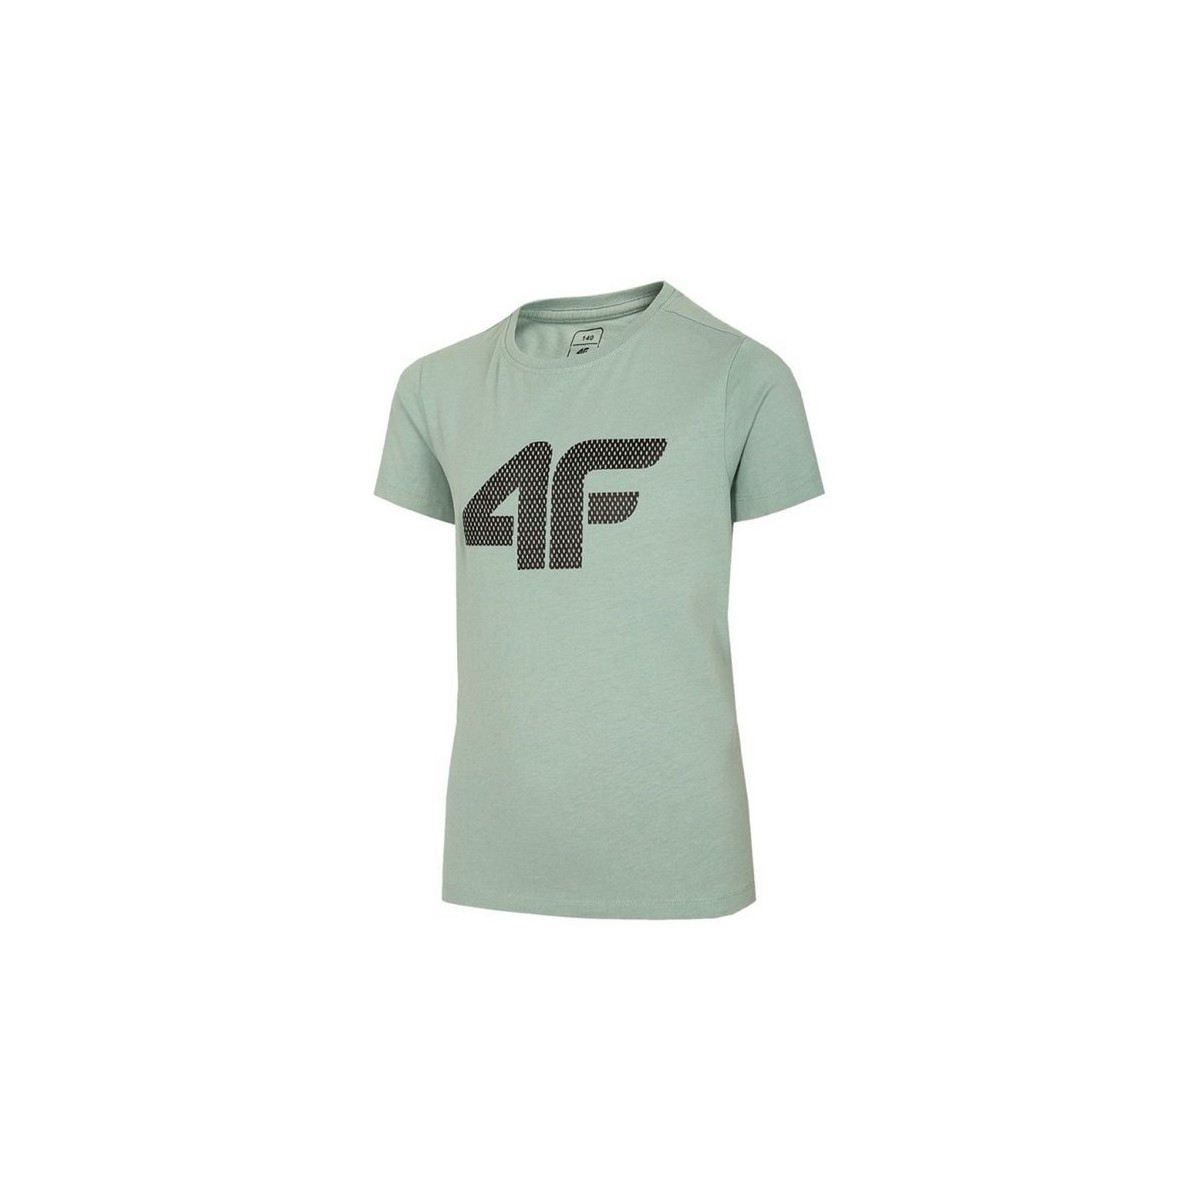 textil Dreng T-shirts m. korte ærmer 4F JTSM002 Grøn